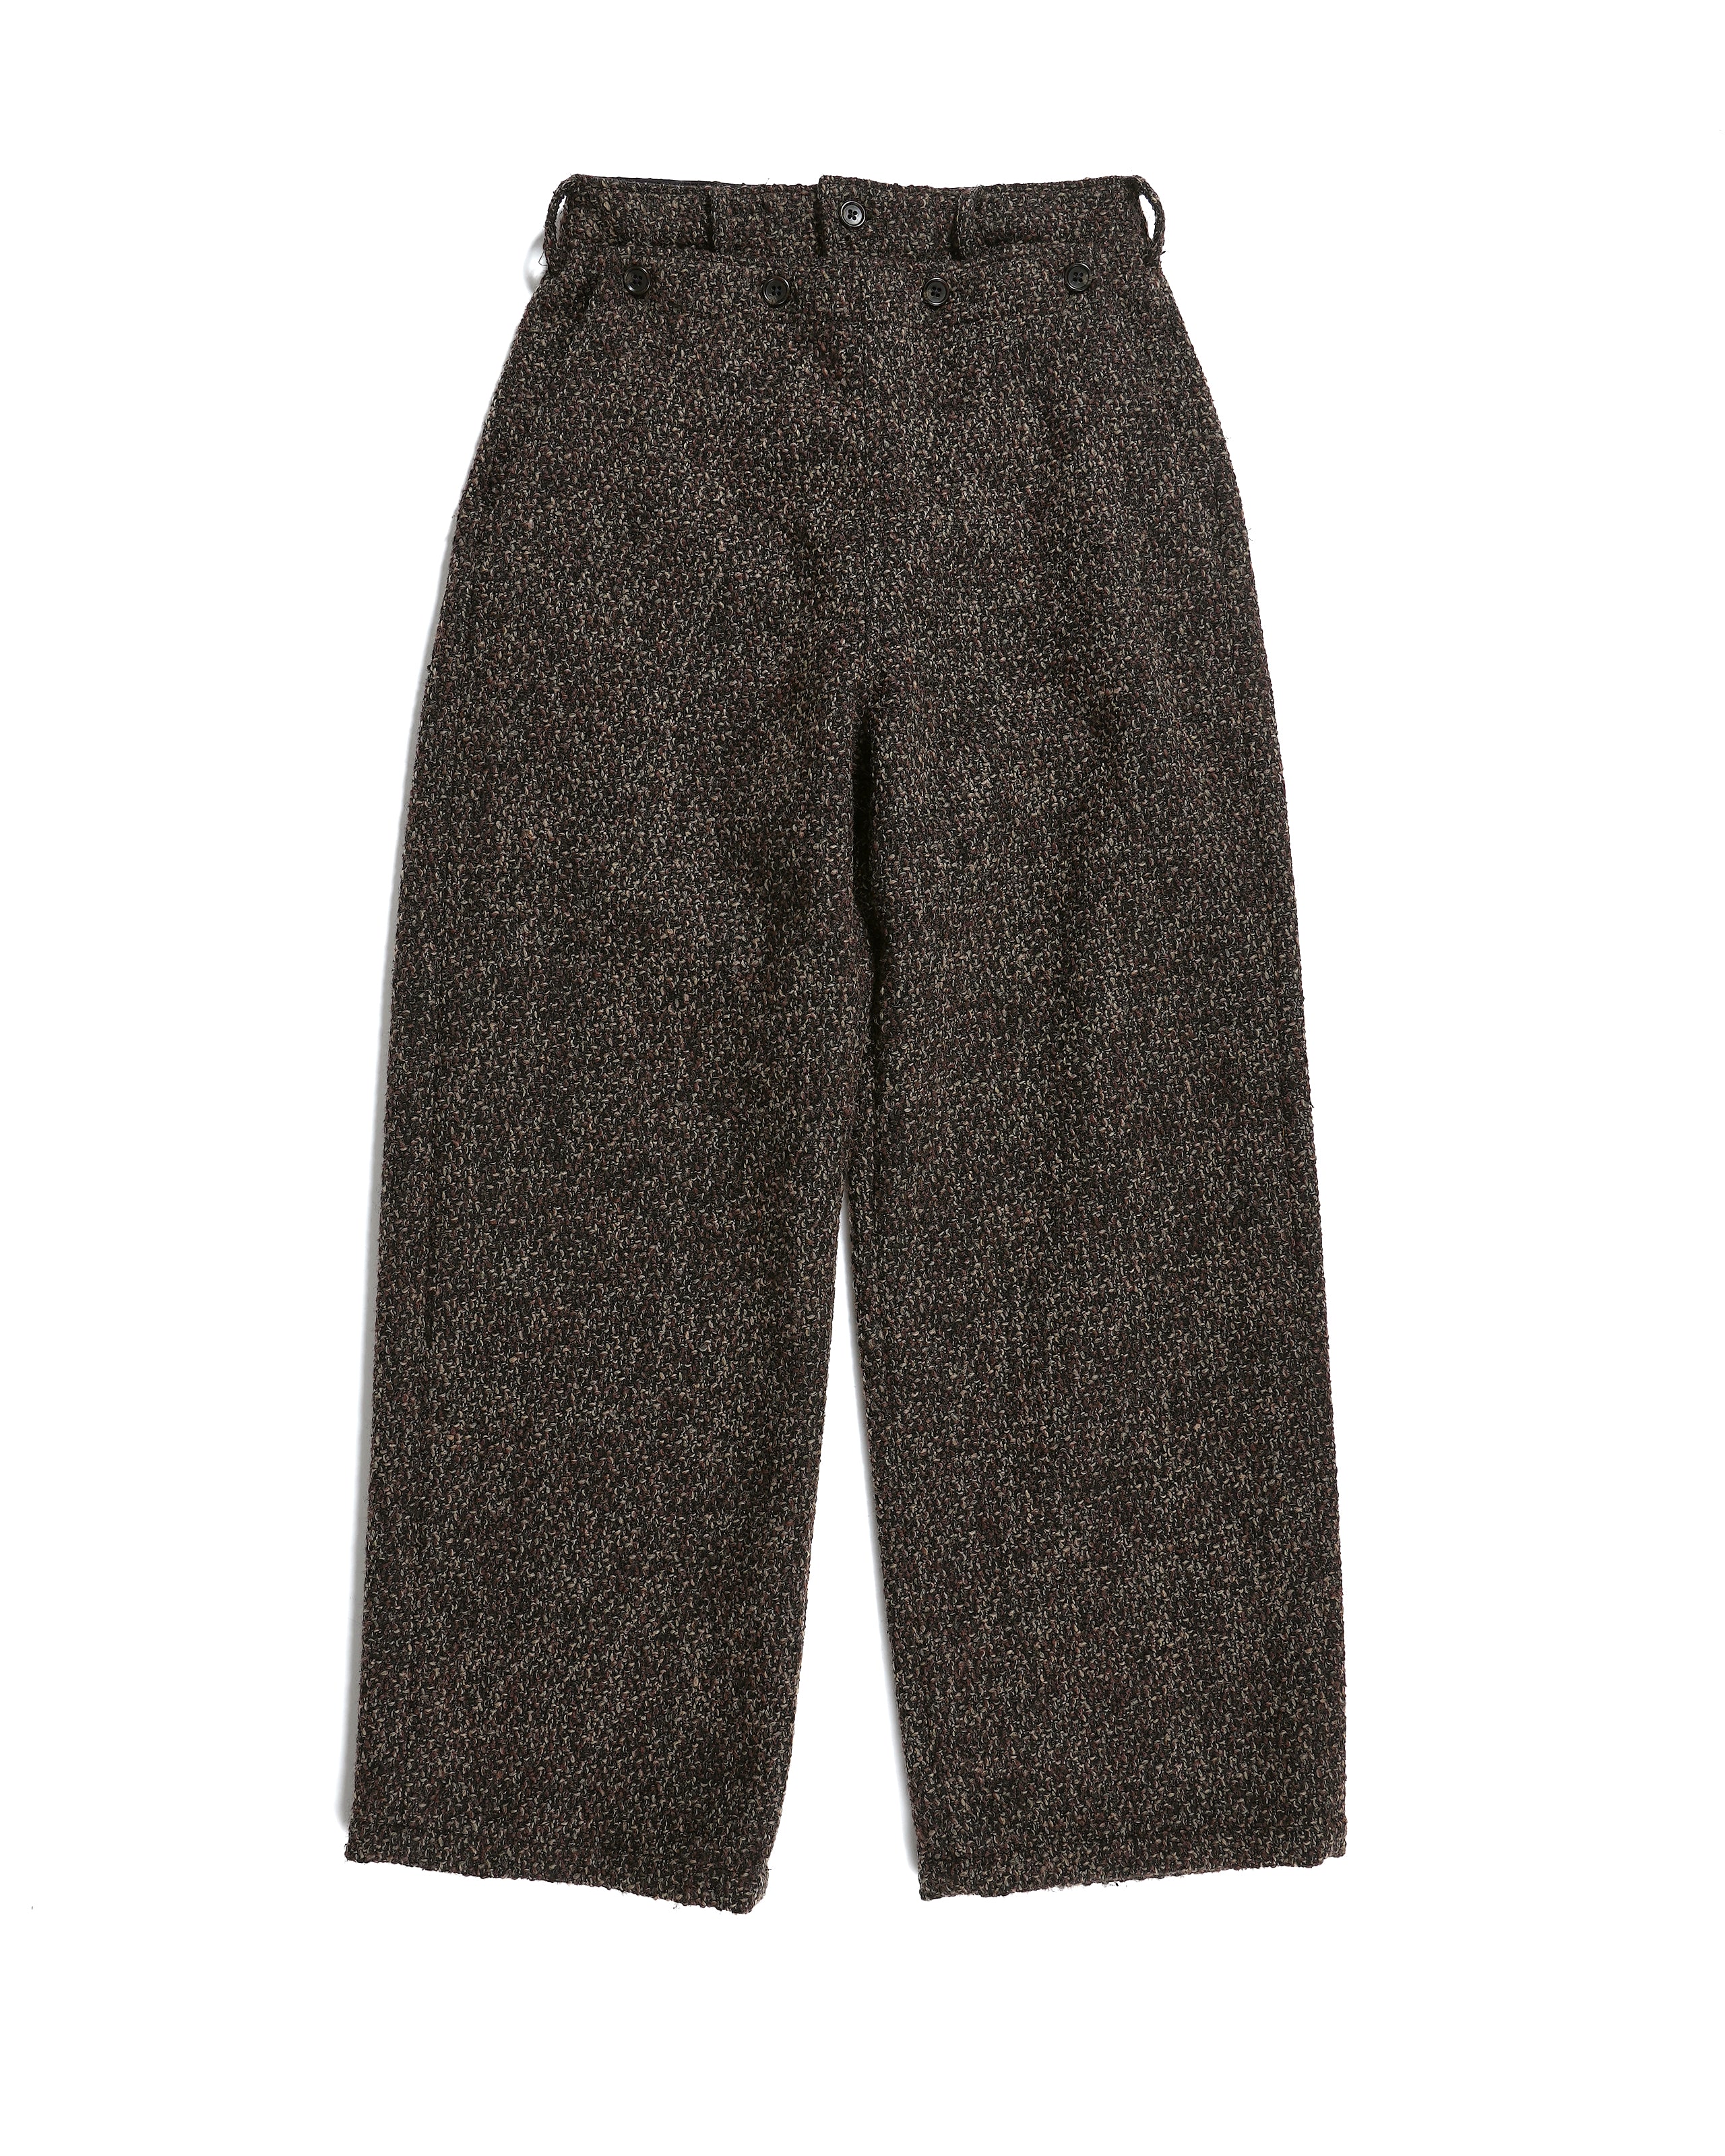 Engineered Garments Sailor Pant - Dk Brown Polyester Wool Tweed